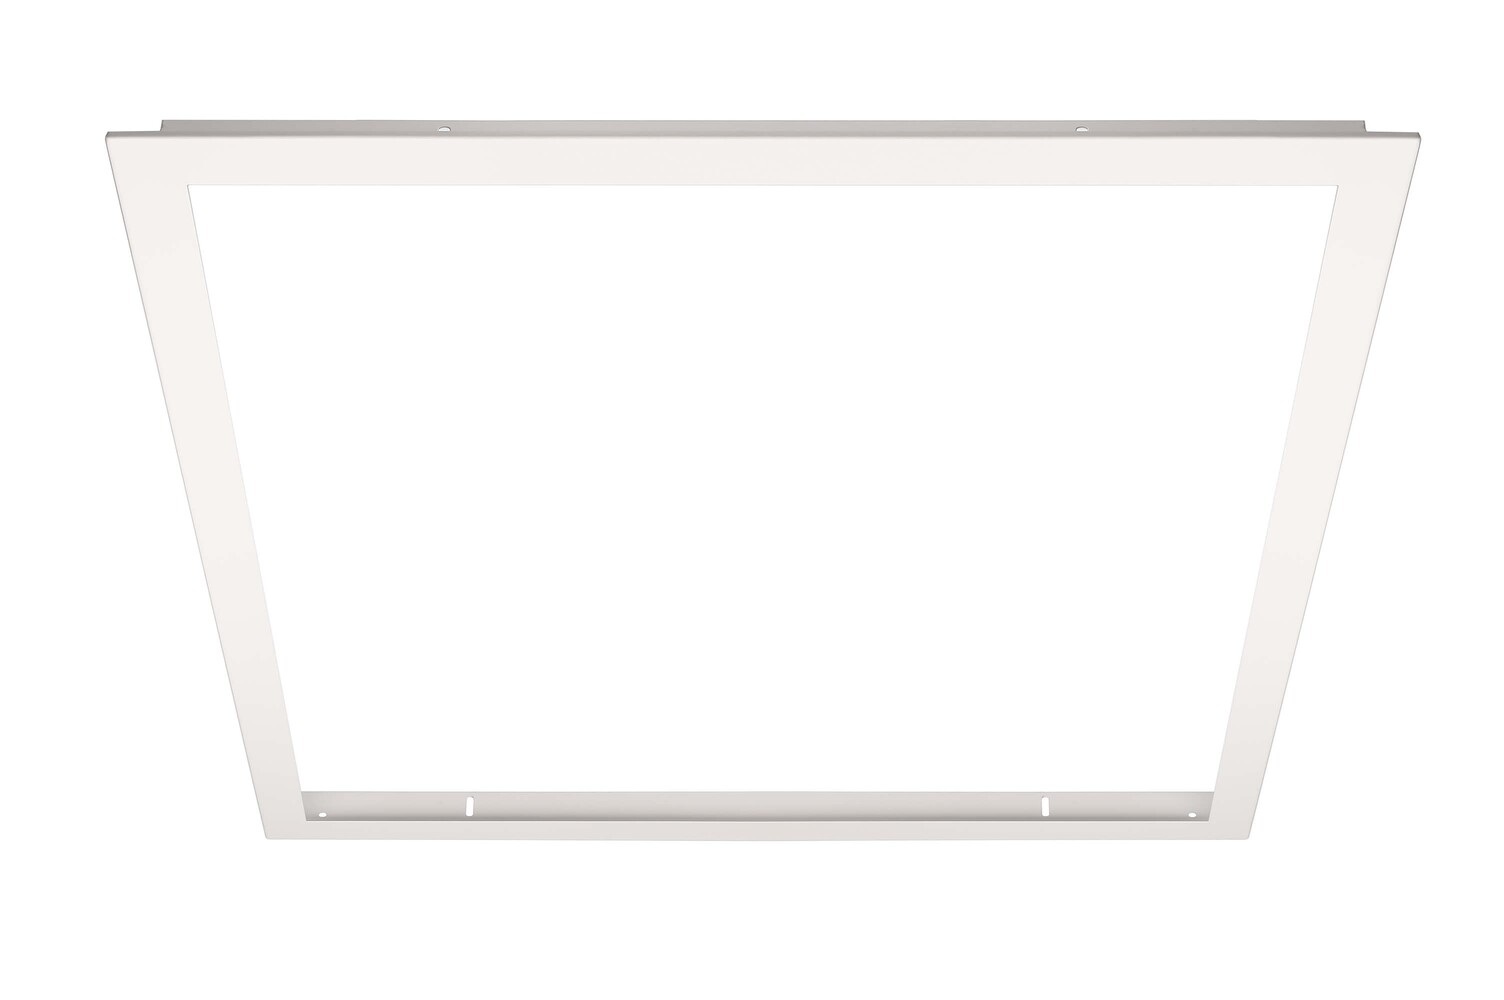 Qualitativ hochwertiger Einbaurahmen für Backlit Panel der Marke Deko-Light mit beeindruckenden Abmessungen von 620x620mm